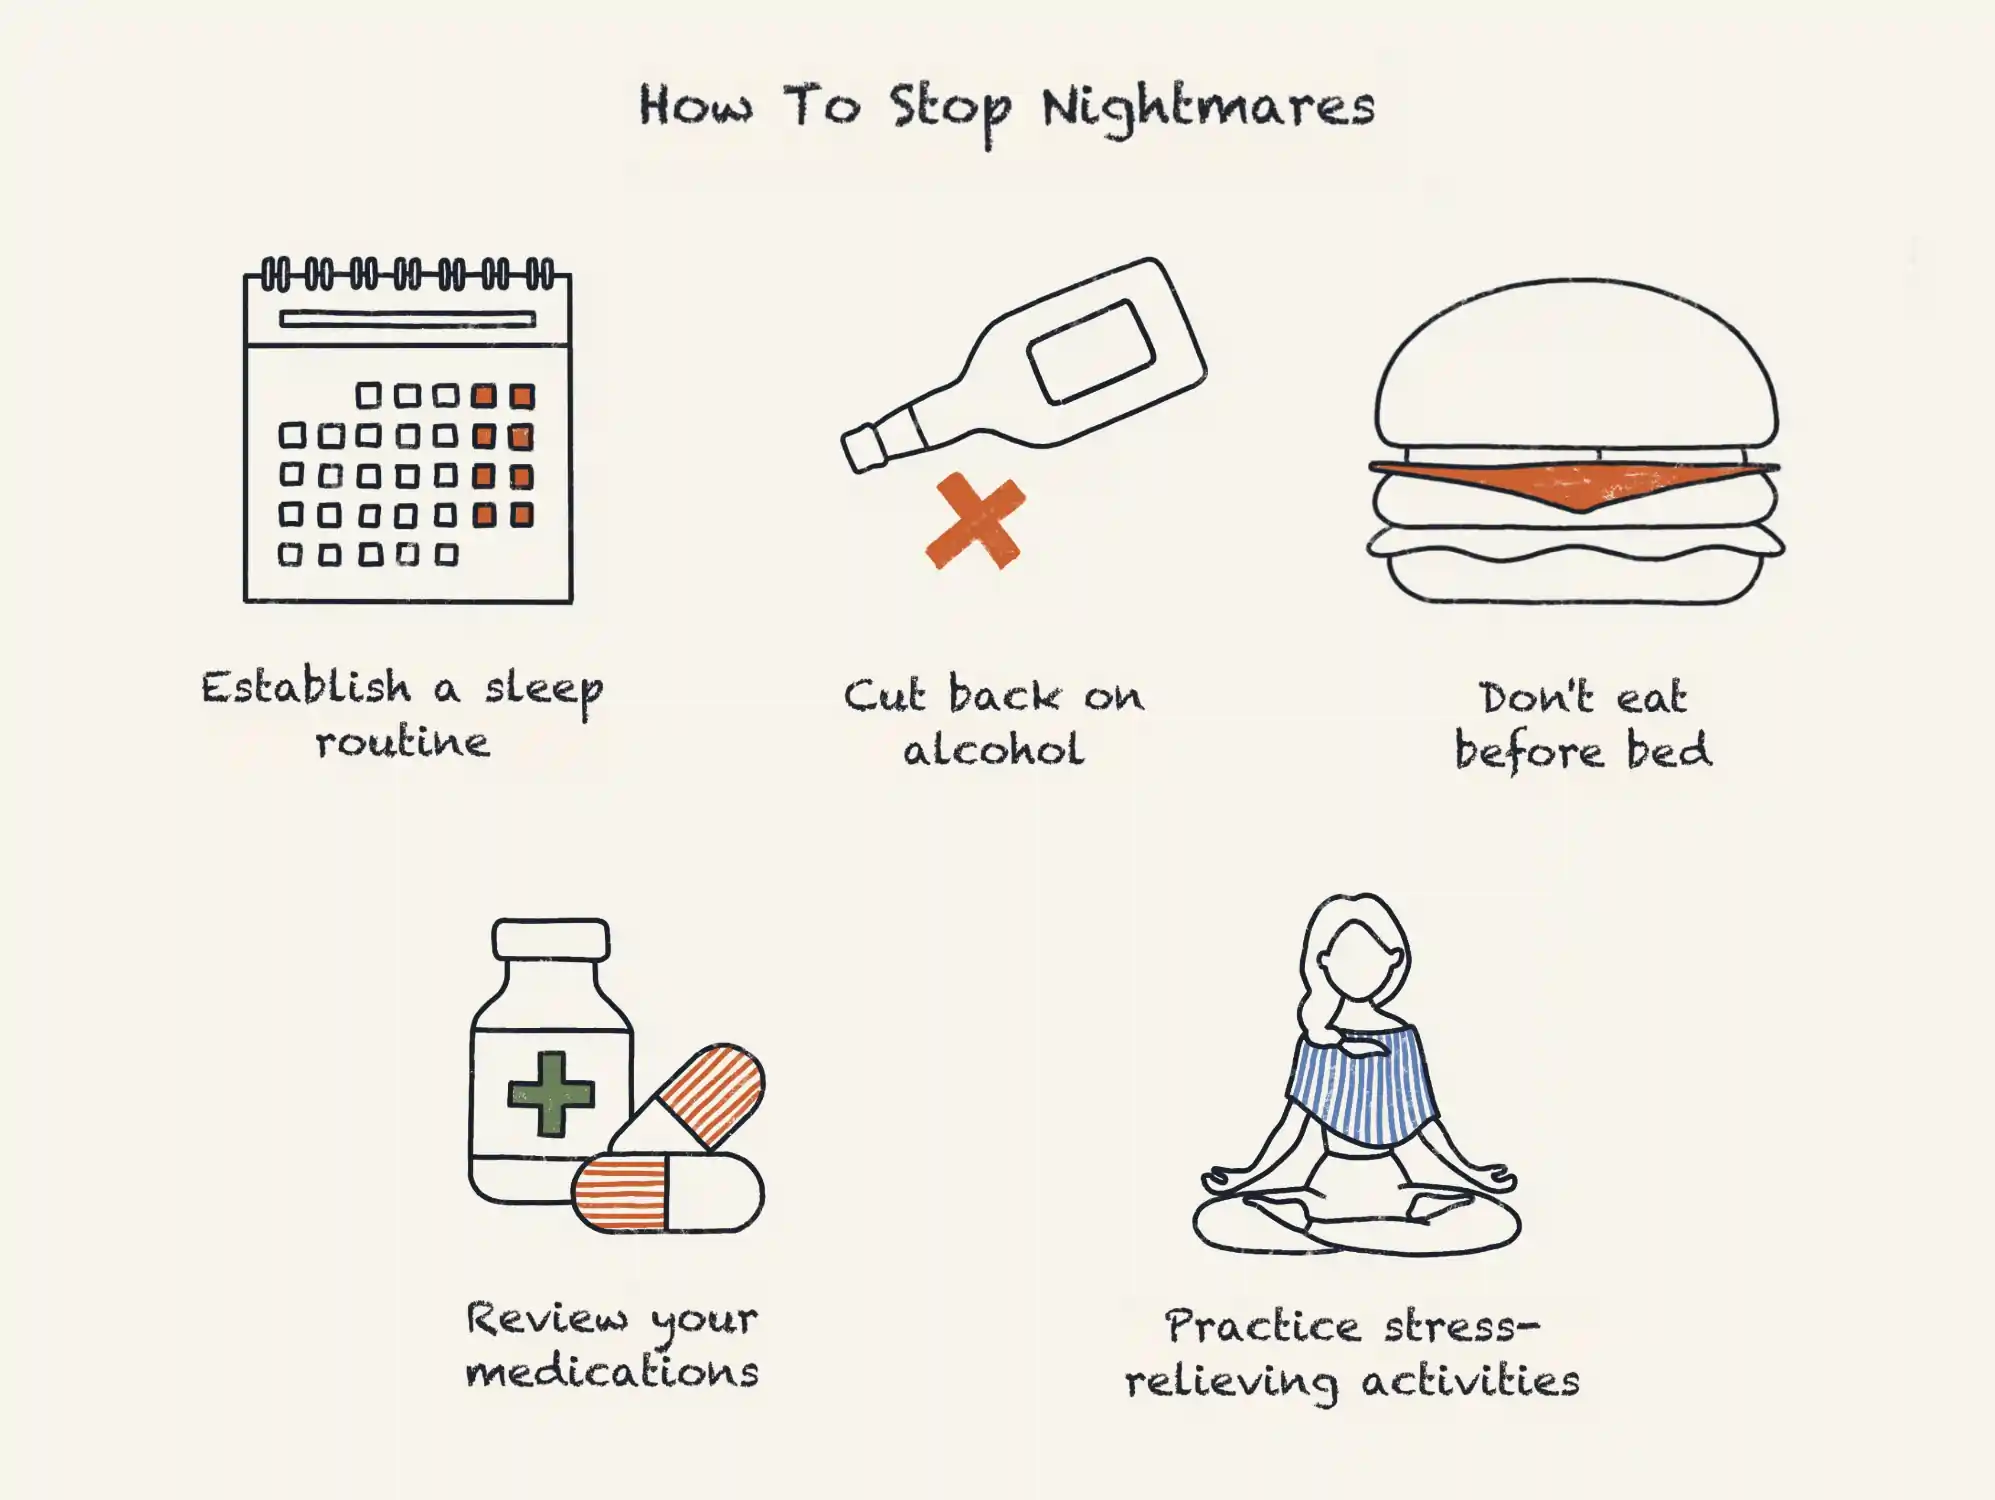 How To Stop Nightmares?